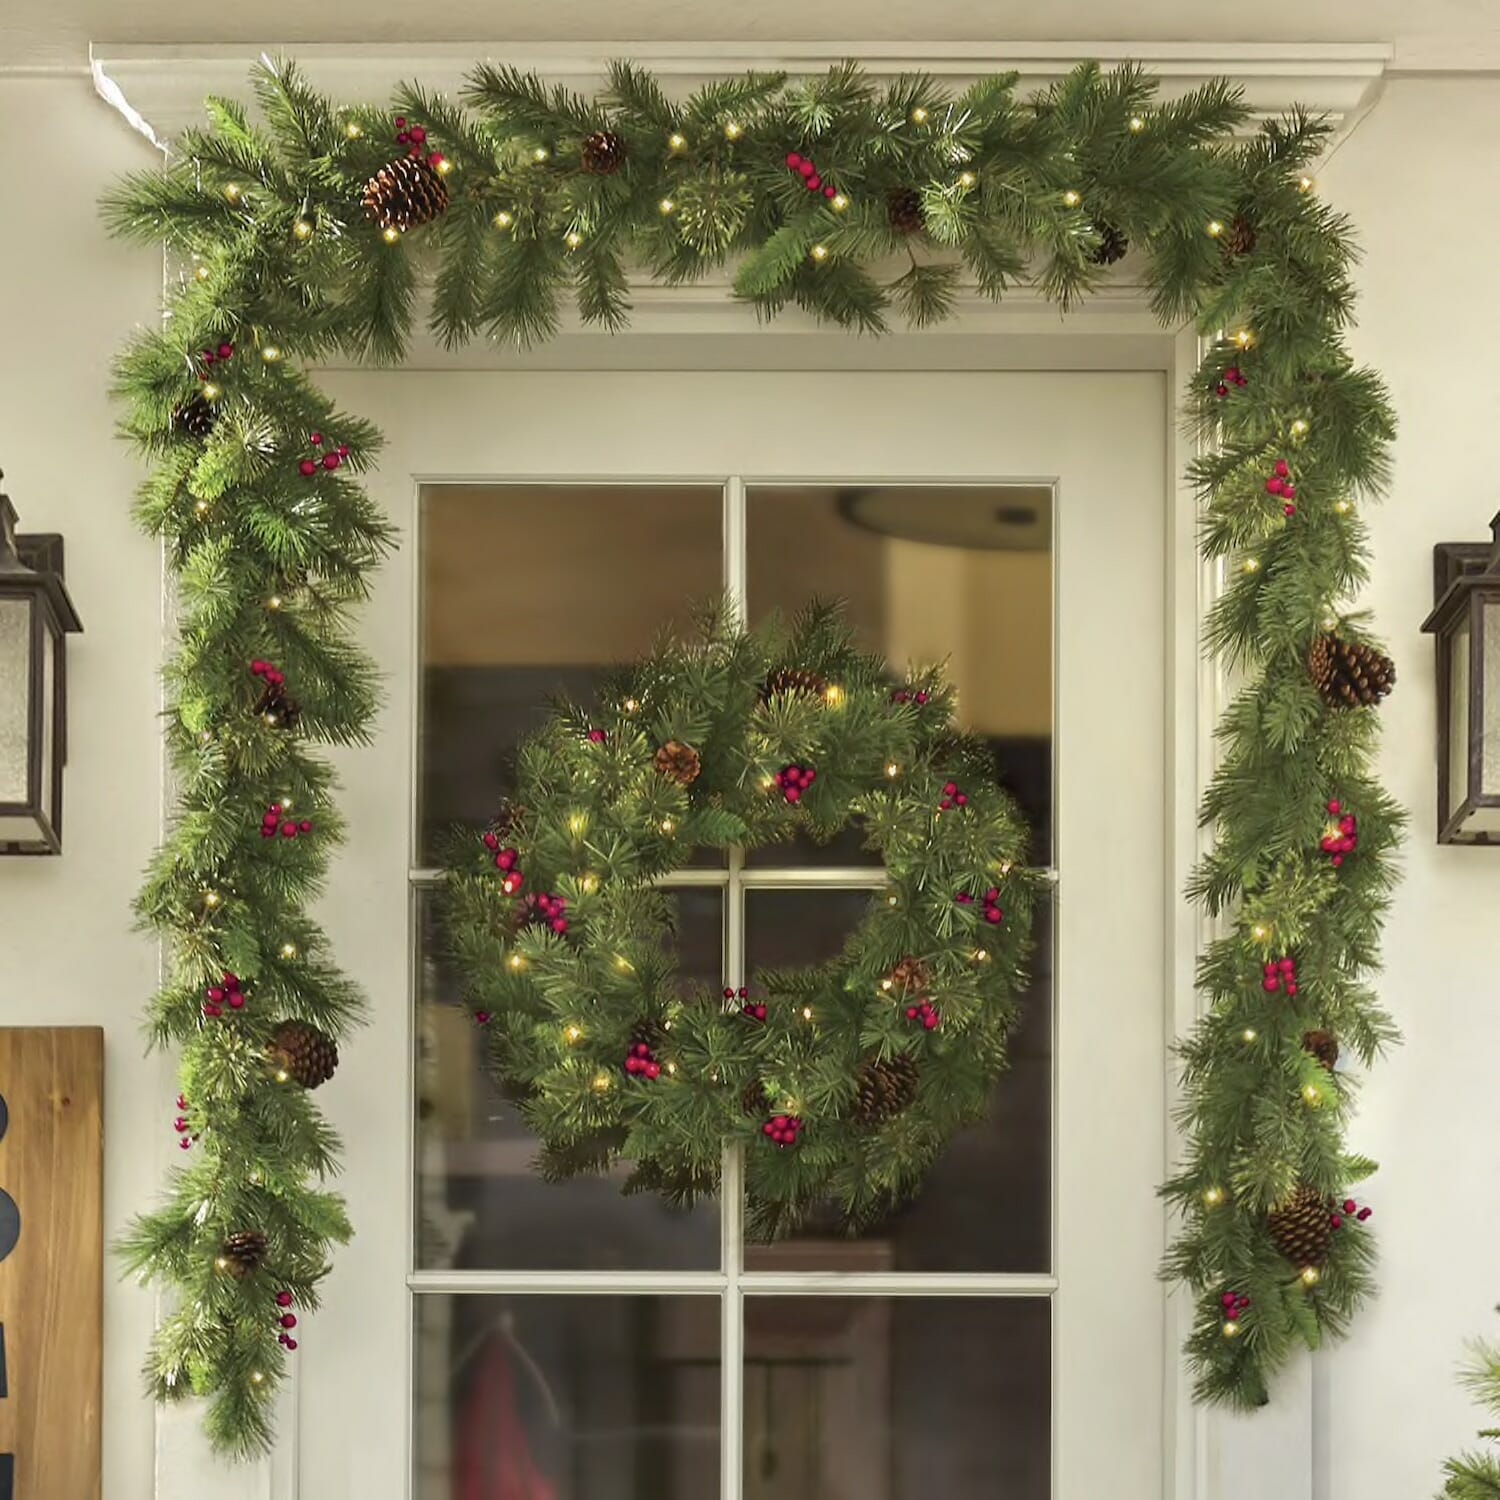 Brown Metal Wreath Holder Over the Door 18" Hook Home Decor LOT 